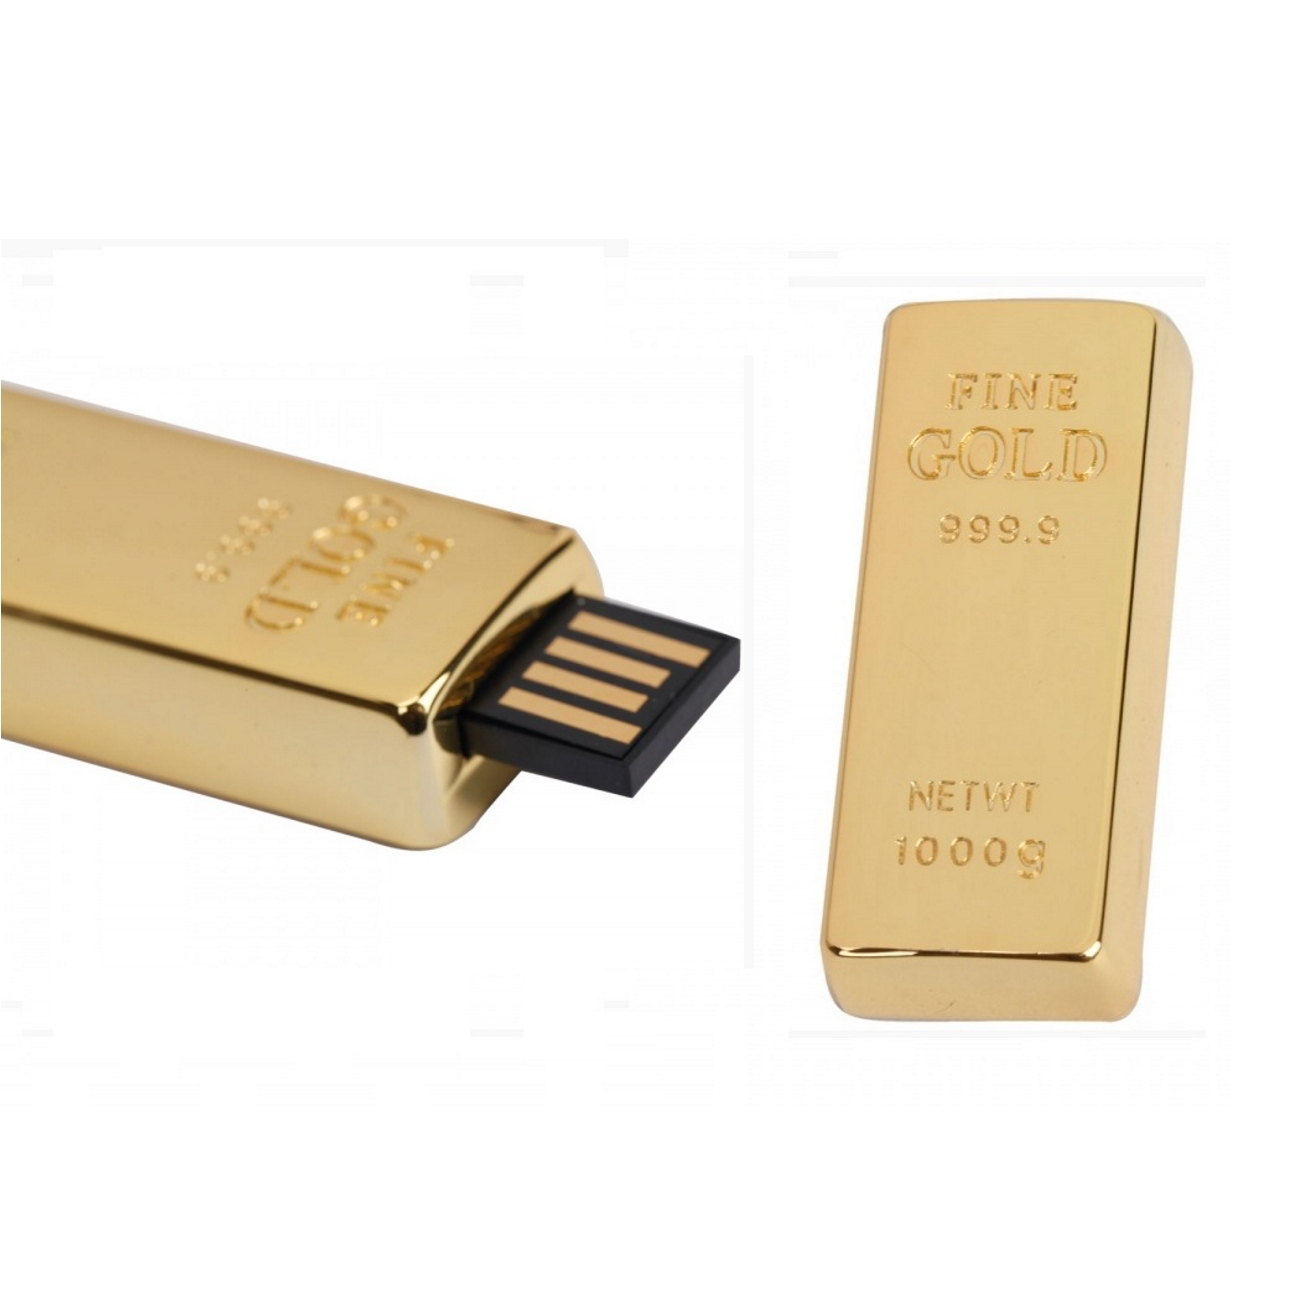 USB-Stick ® 1 USB Goldbarren GERMANY GB) (Gold,